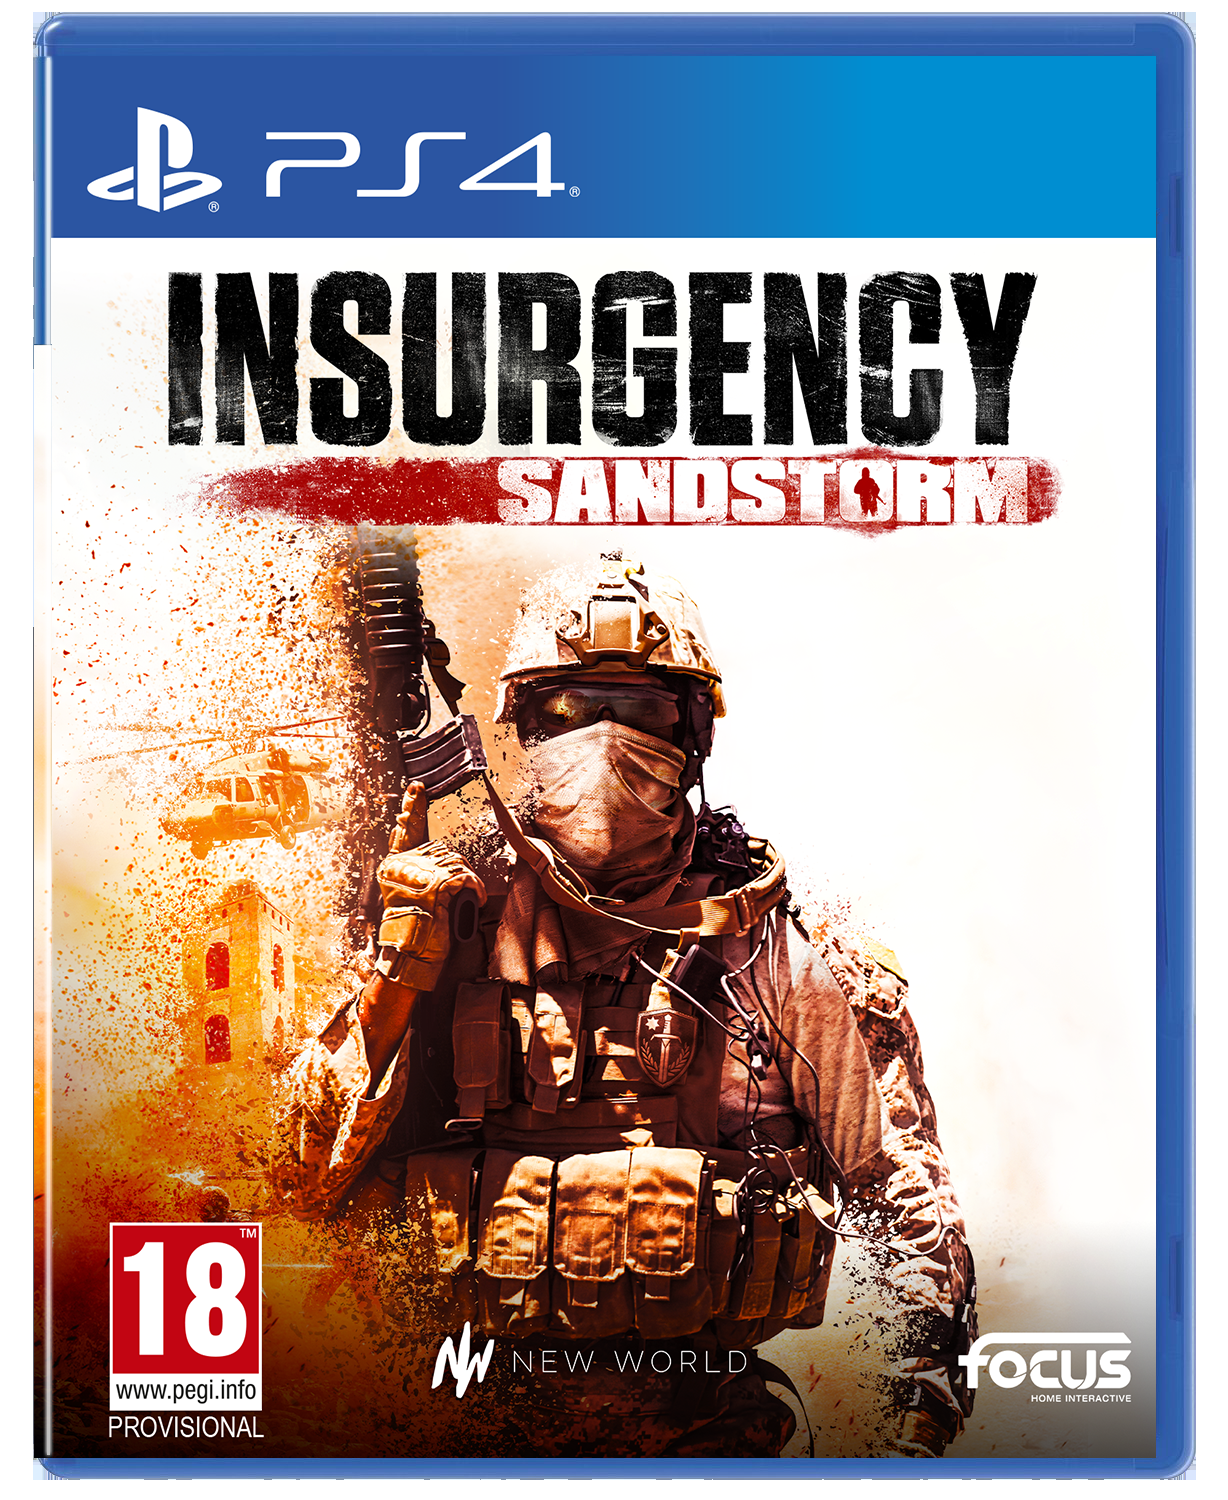 Insurgency: Sandstorm for PS4